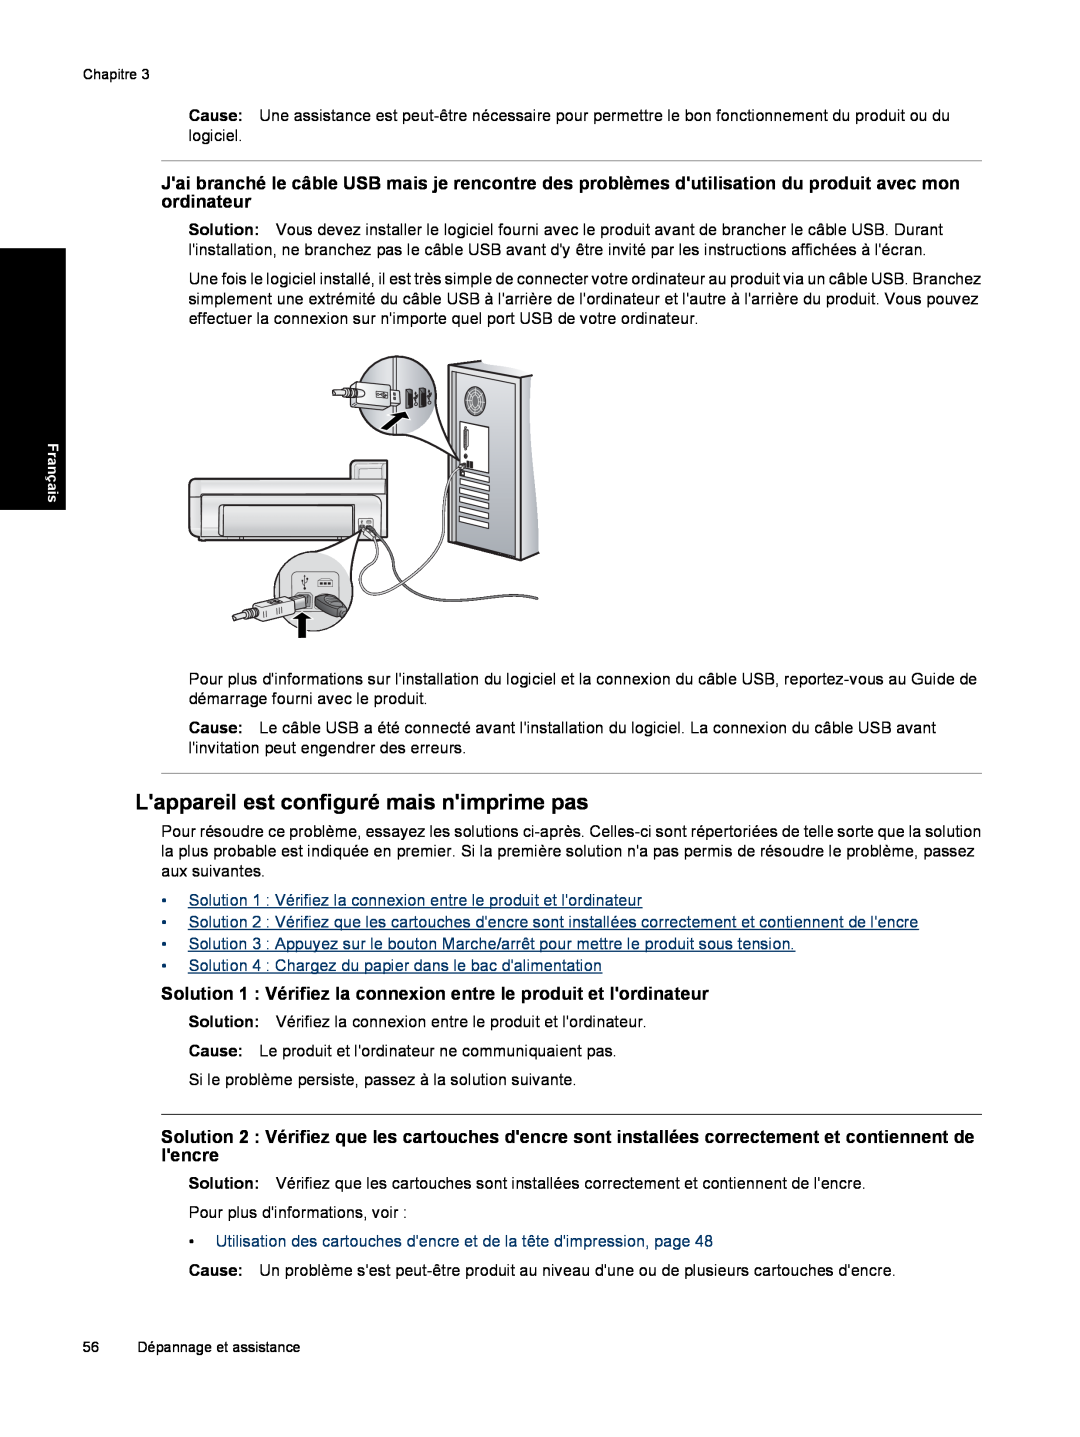 HP B8550 manual Lappareil est configuré mais nimprime pas, Solution 1 Vérifiez la connexion entre le produit et lordinateur 